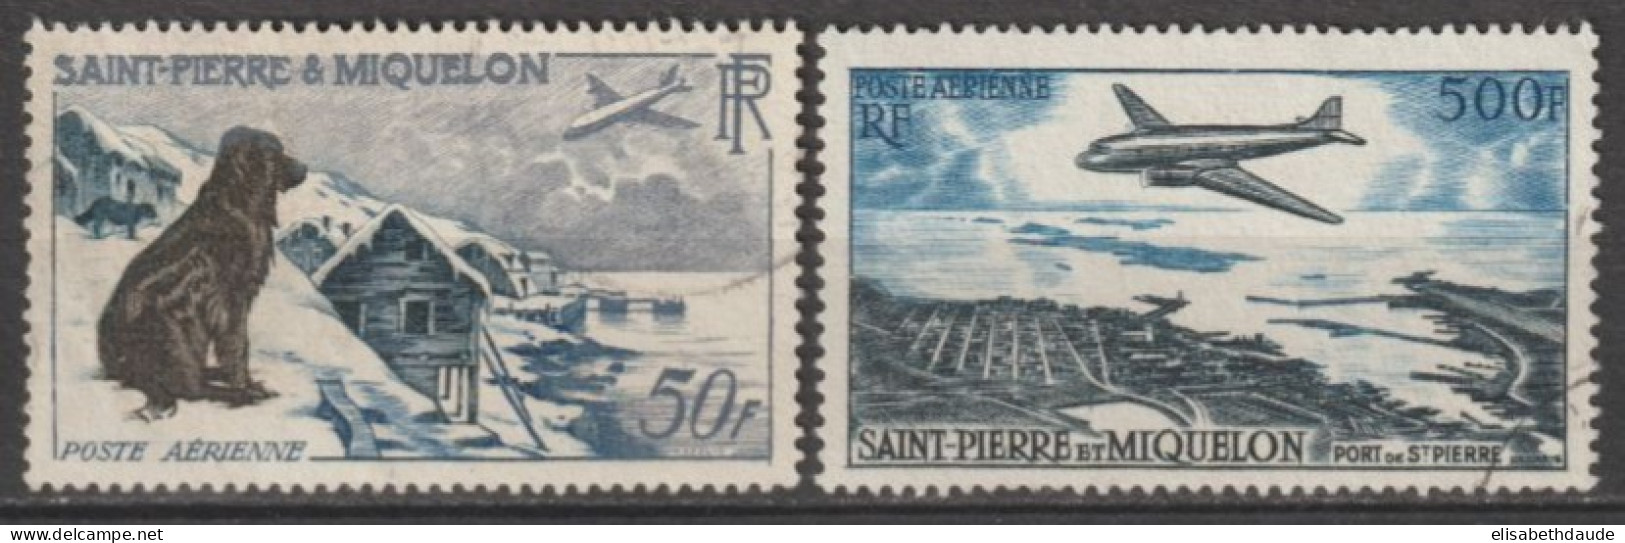 SPM - 1956/57 - POSTE AERIENNE - YVERT N° 23/24 OBLITERES - COTE = 60 EUR. - Oblitérés